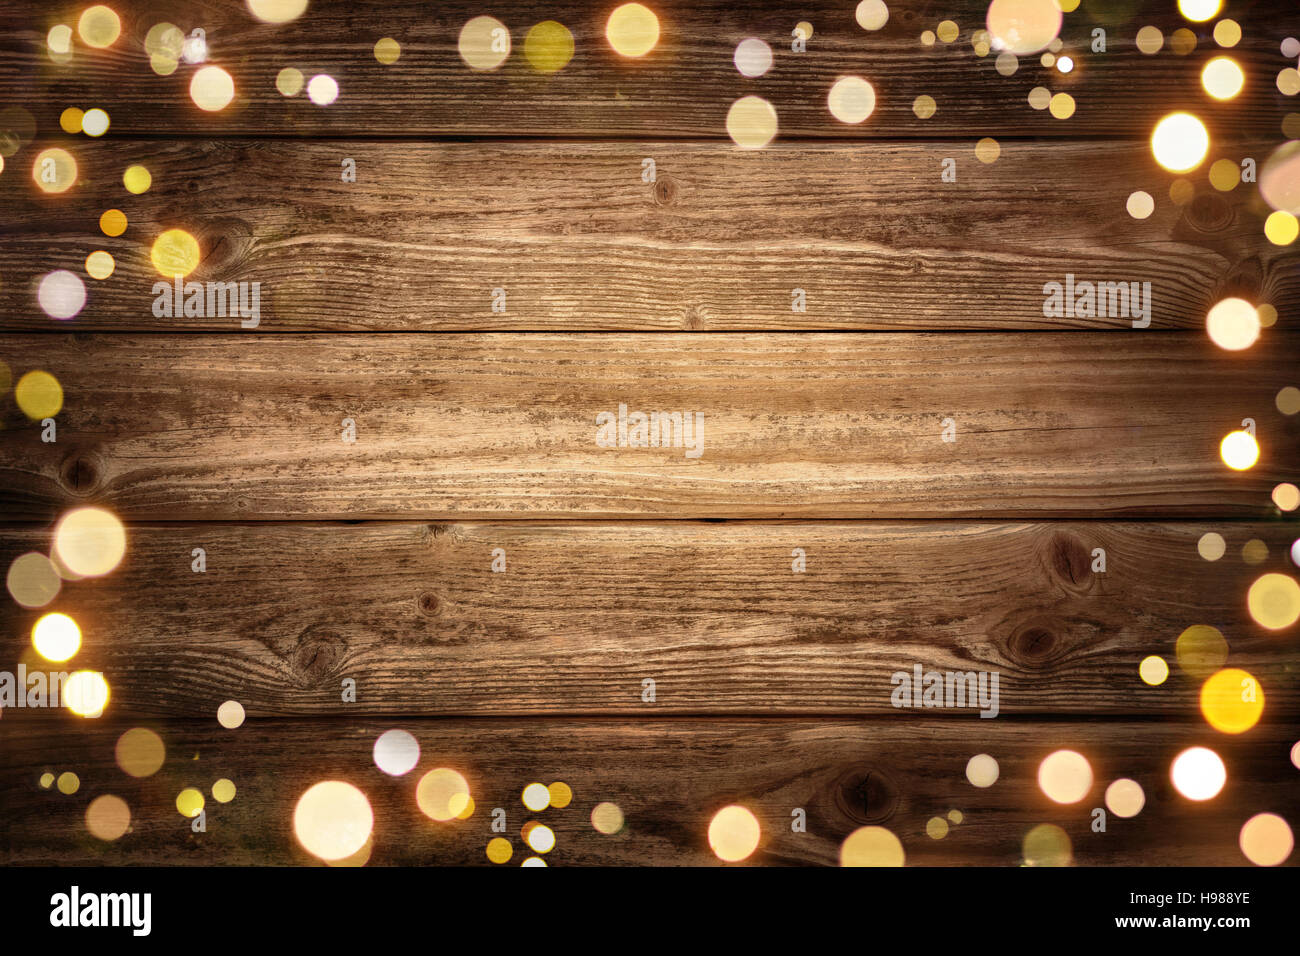 Festliches rustikale Holz Hintergrund mit dunklen Vignette und umrahmt von leuchtende Lichter Bokeh, ideal für Weihnachten, Werbung oder Partei Stockfoto